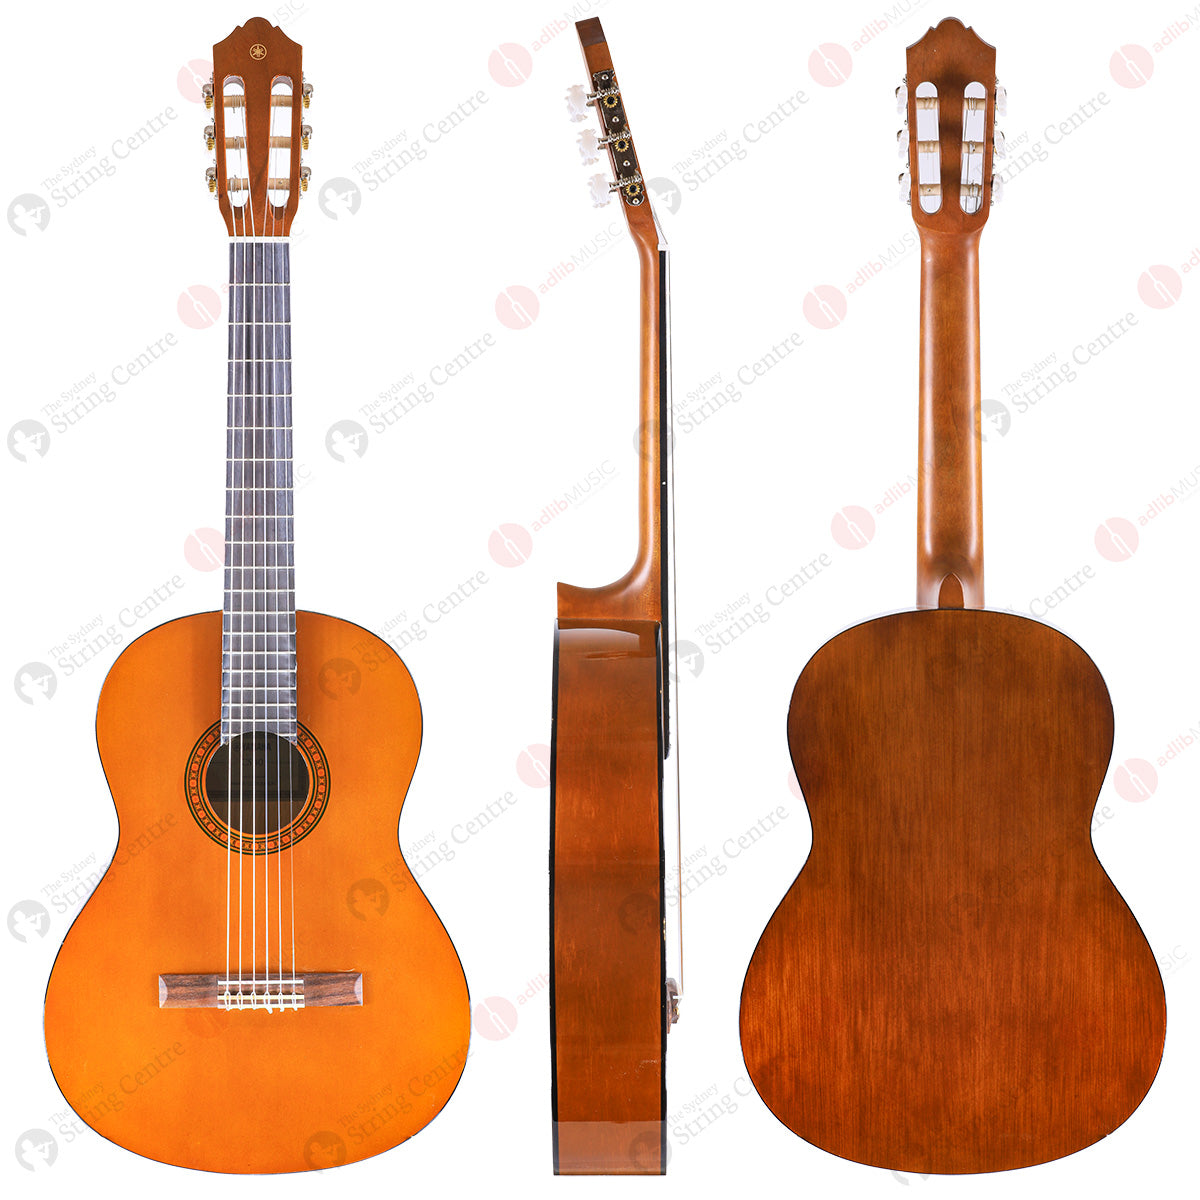 Yamaha CS40II Classical Guitar 3/4 Size